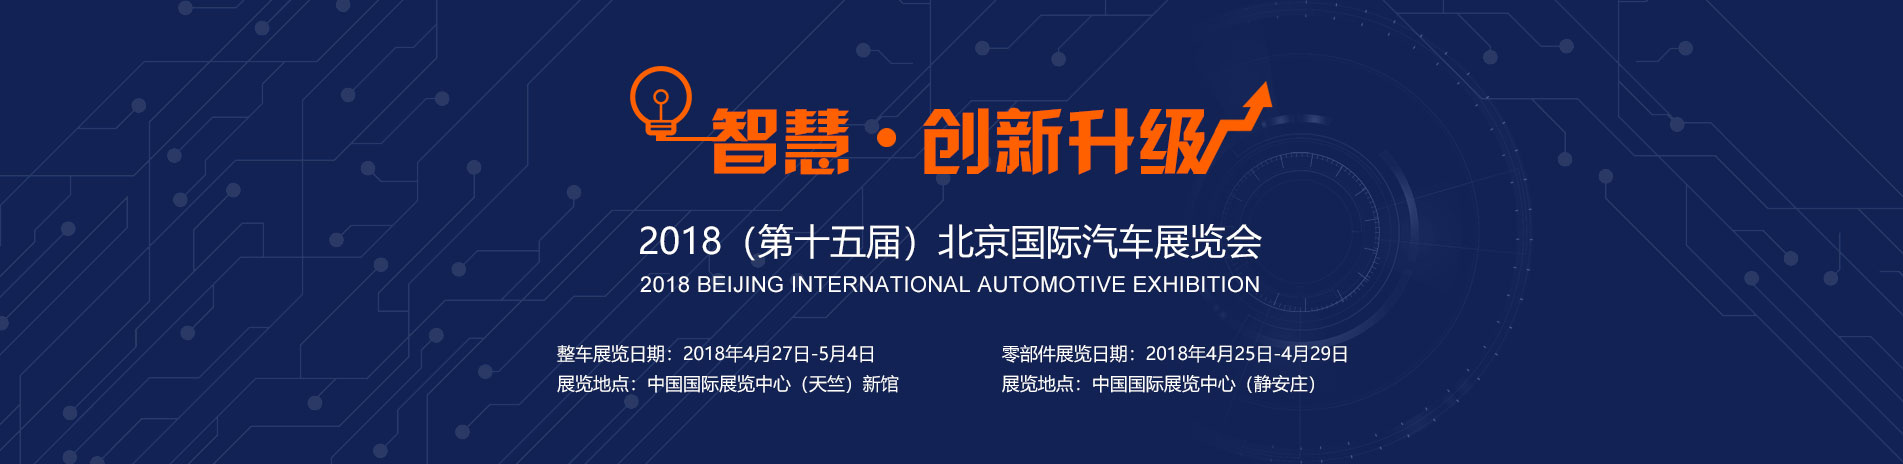 长江客车展台 智慧 · 创新升级 2018北京国际汽车展览会